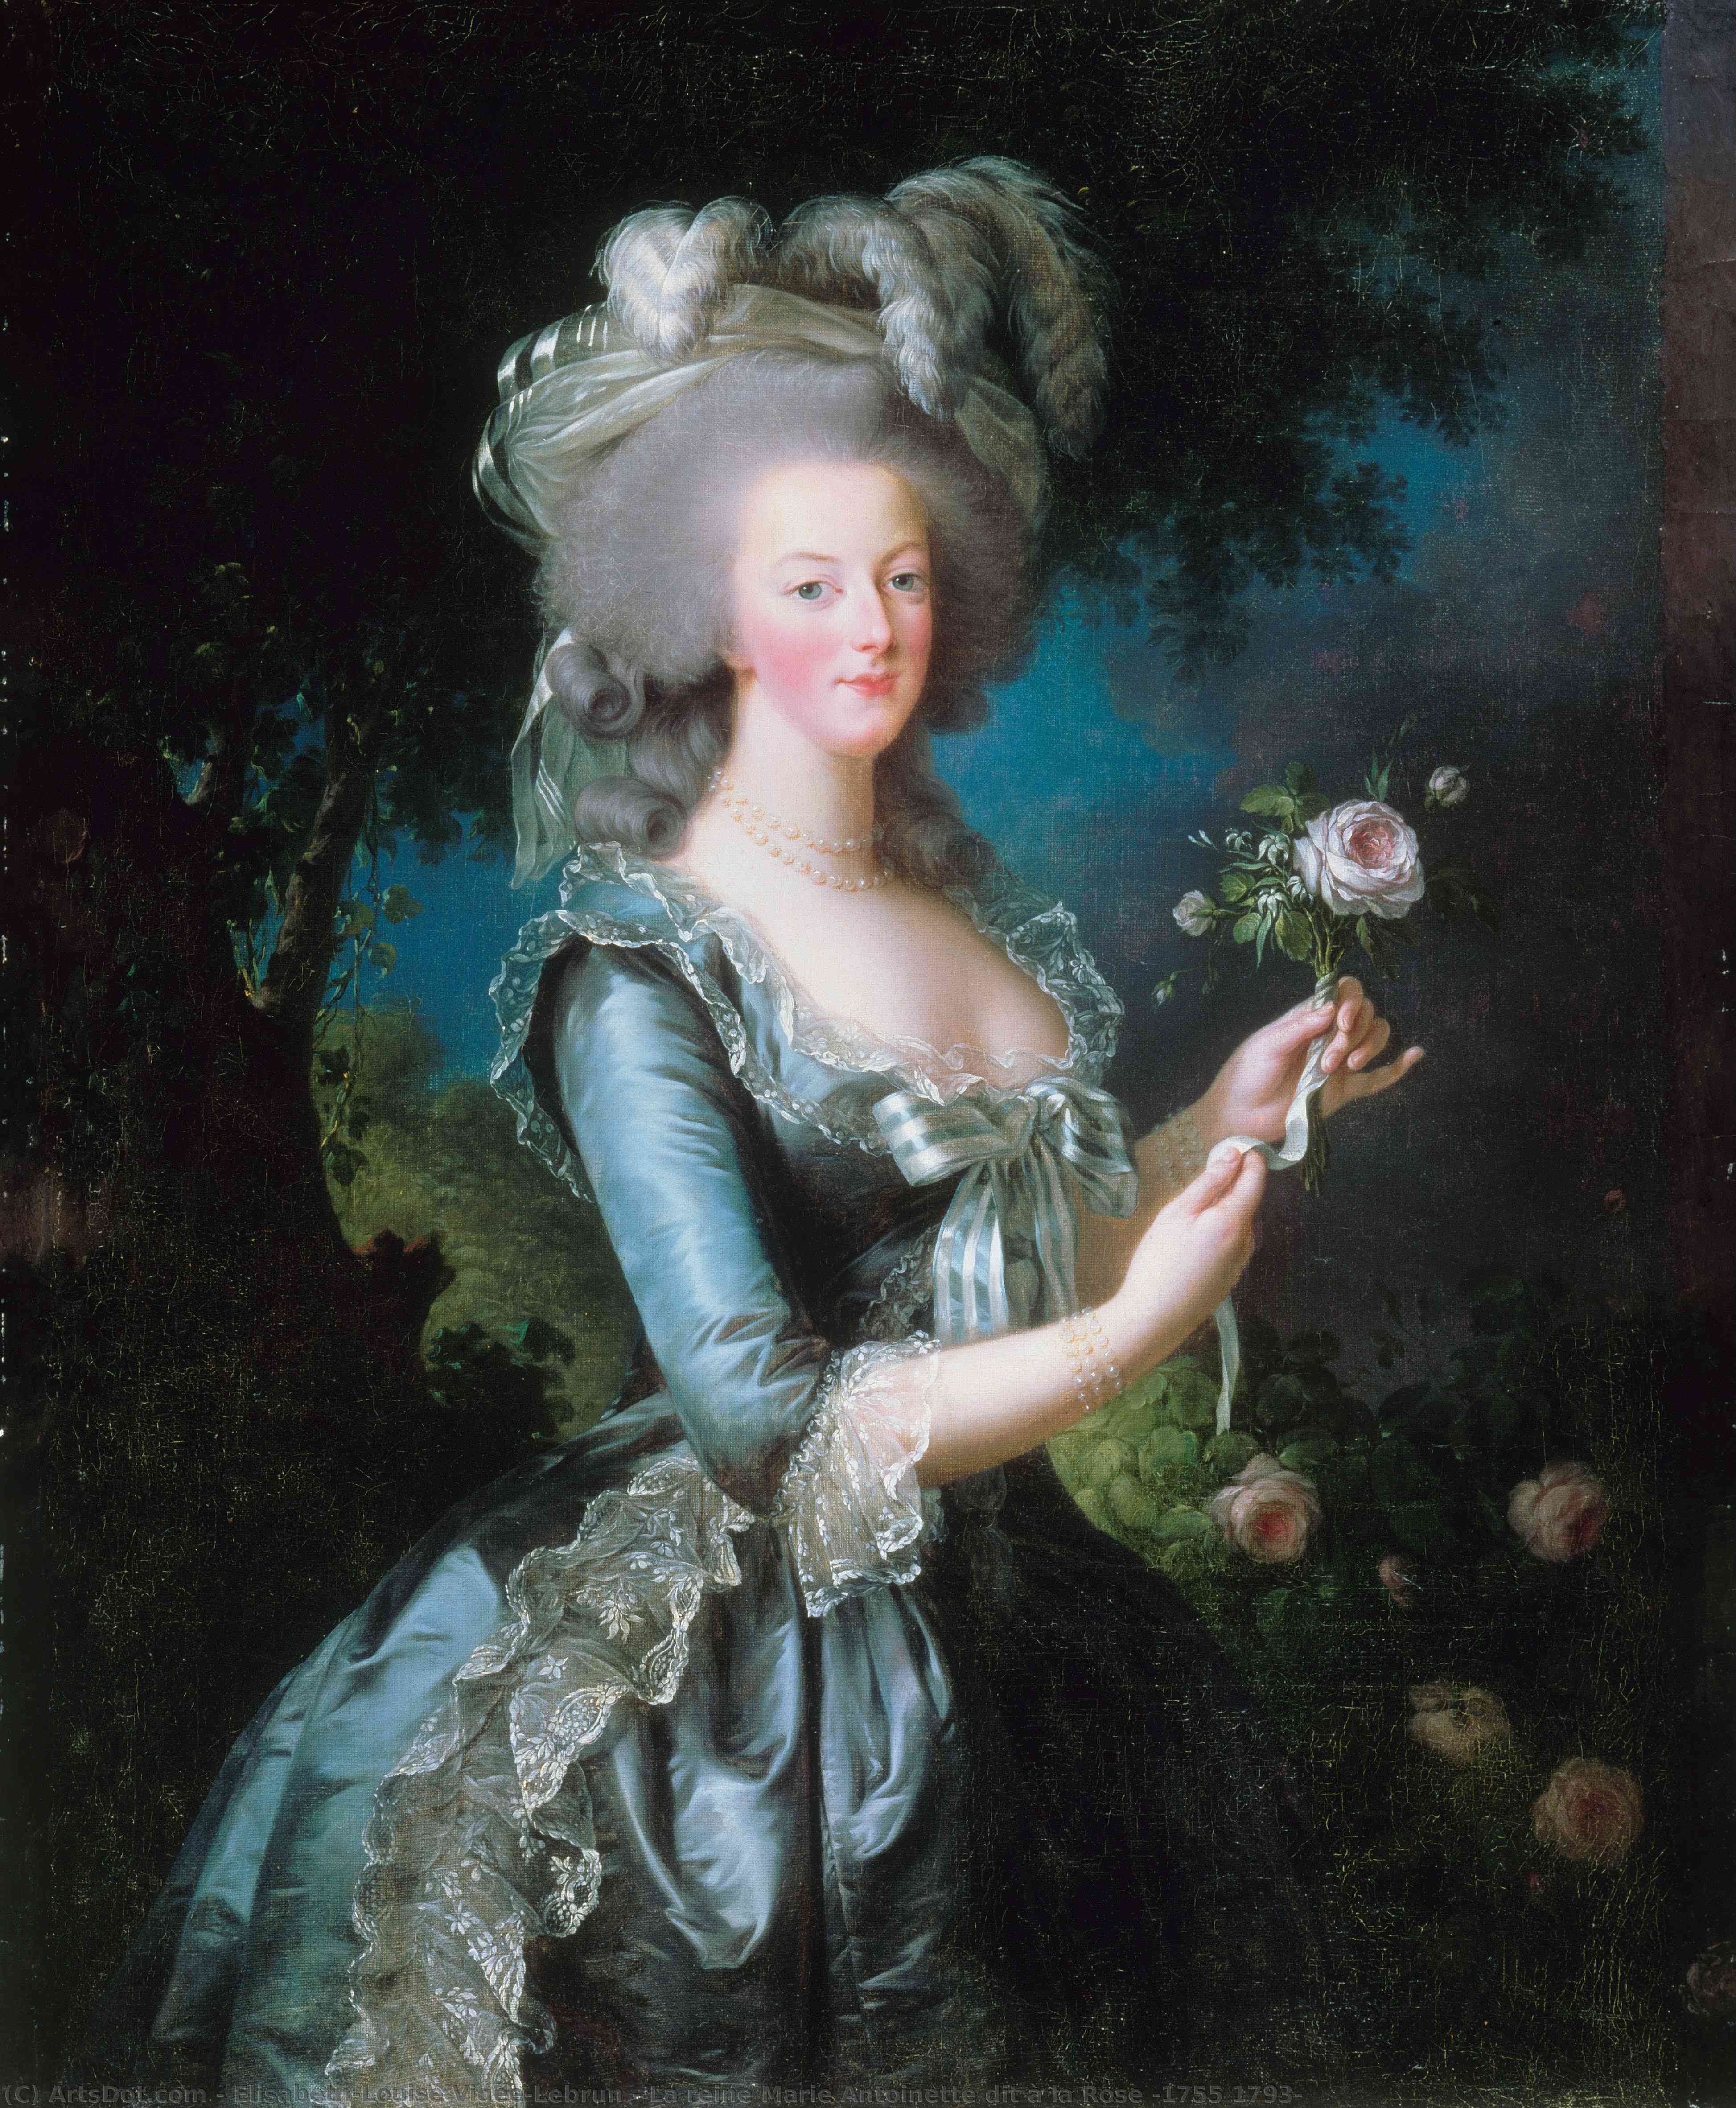 WikiOO.org - Encyclopedia of Fine Arts - Festés, Grafika Elisabeth-Louise Vigée-Lebrun - La reine Marie Antoinette dit à la Rose (1755 1793)